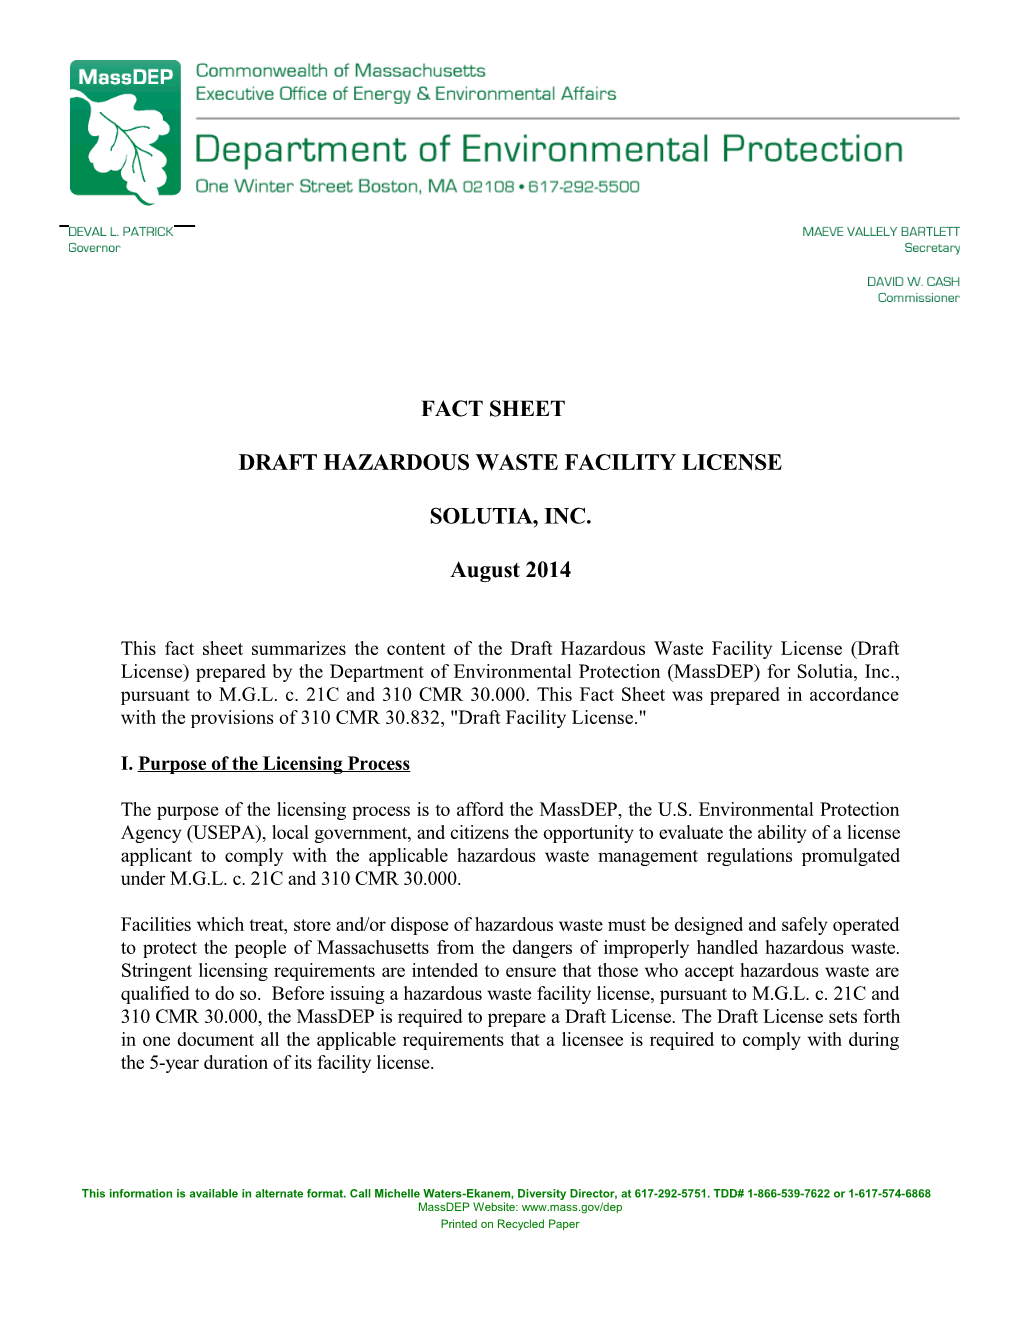 Draft Hazardous Waste Facility License